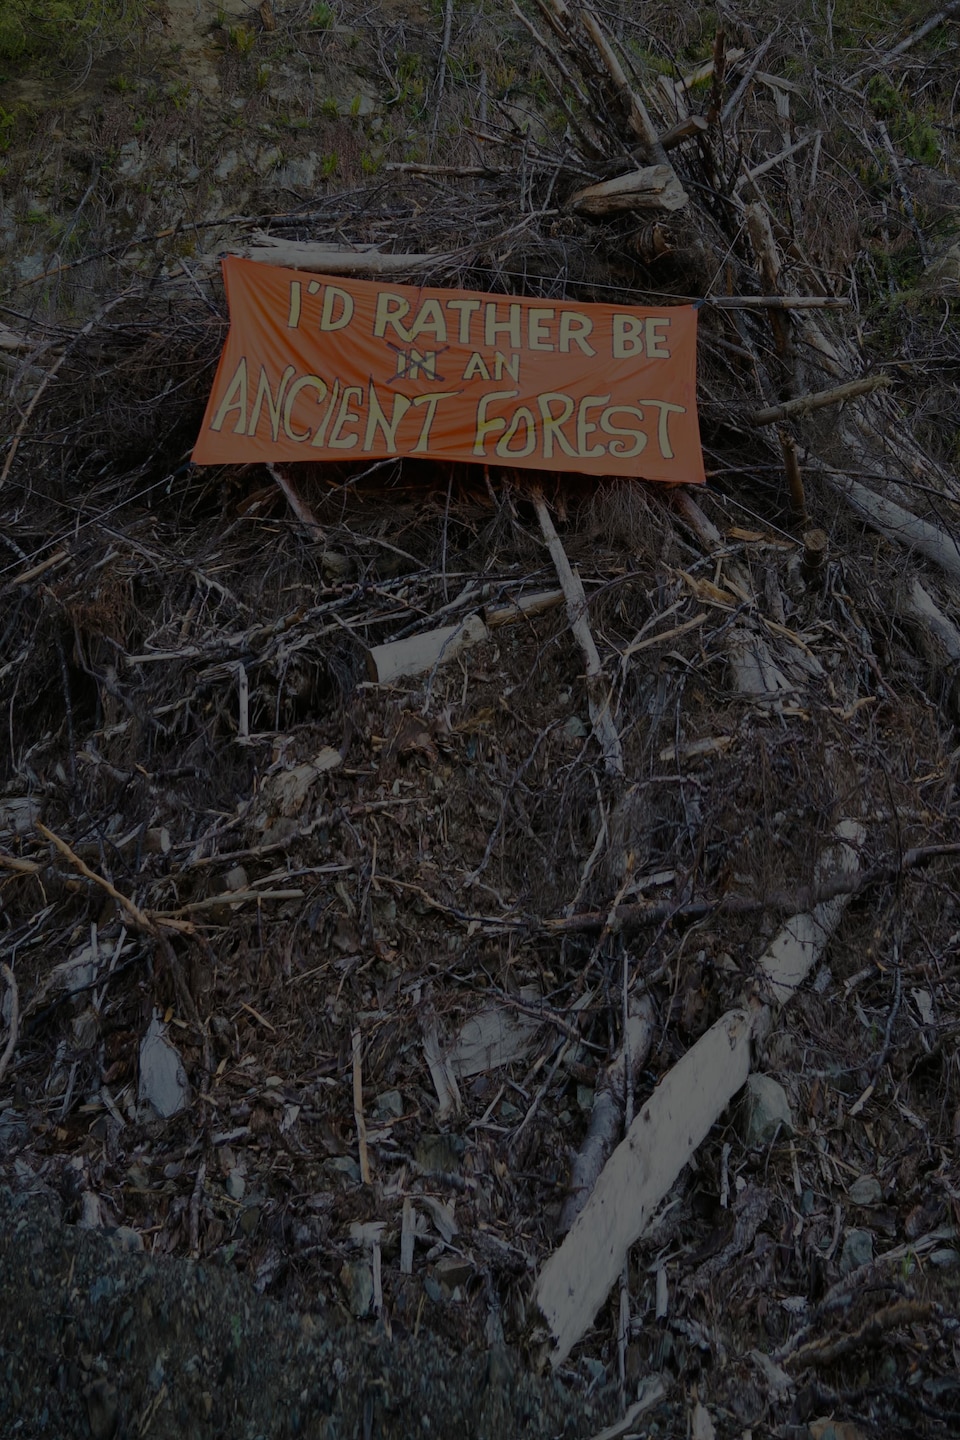 Une affiche indiquant "I'd rather be an ancient forest" sur des restes d'arbres coupés.